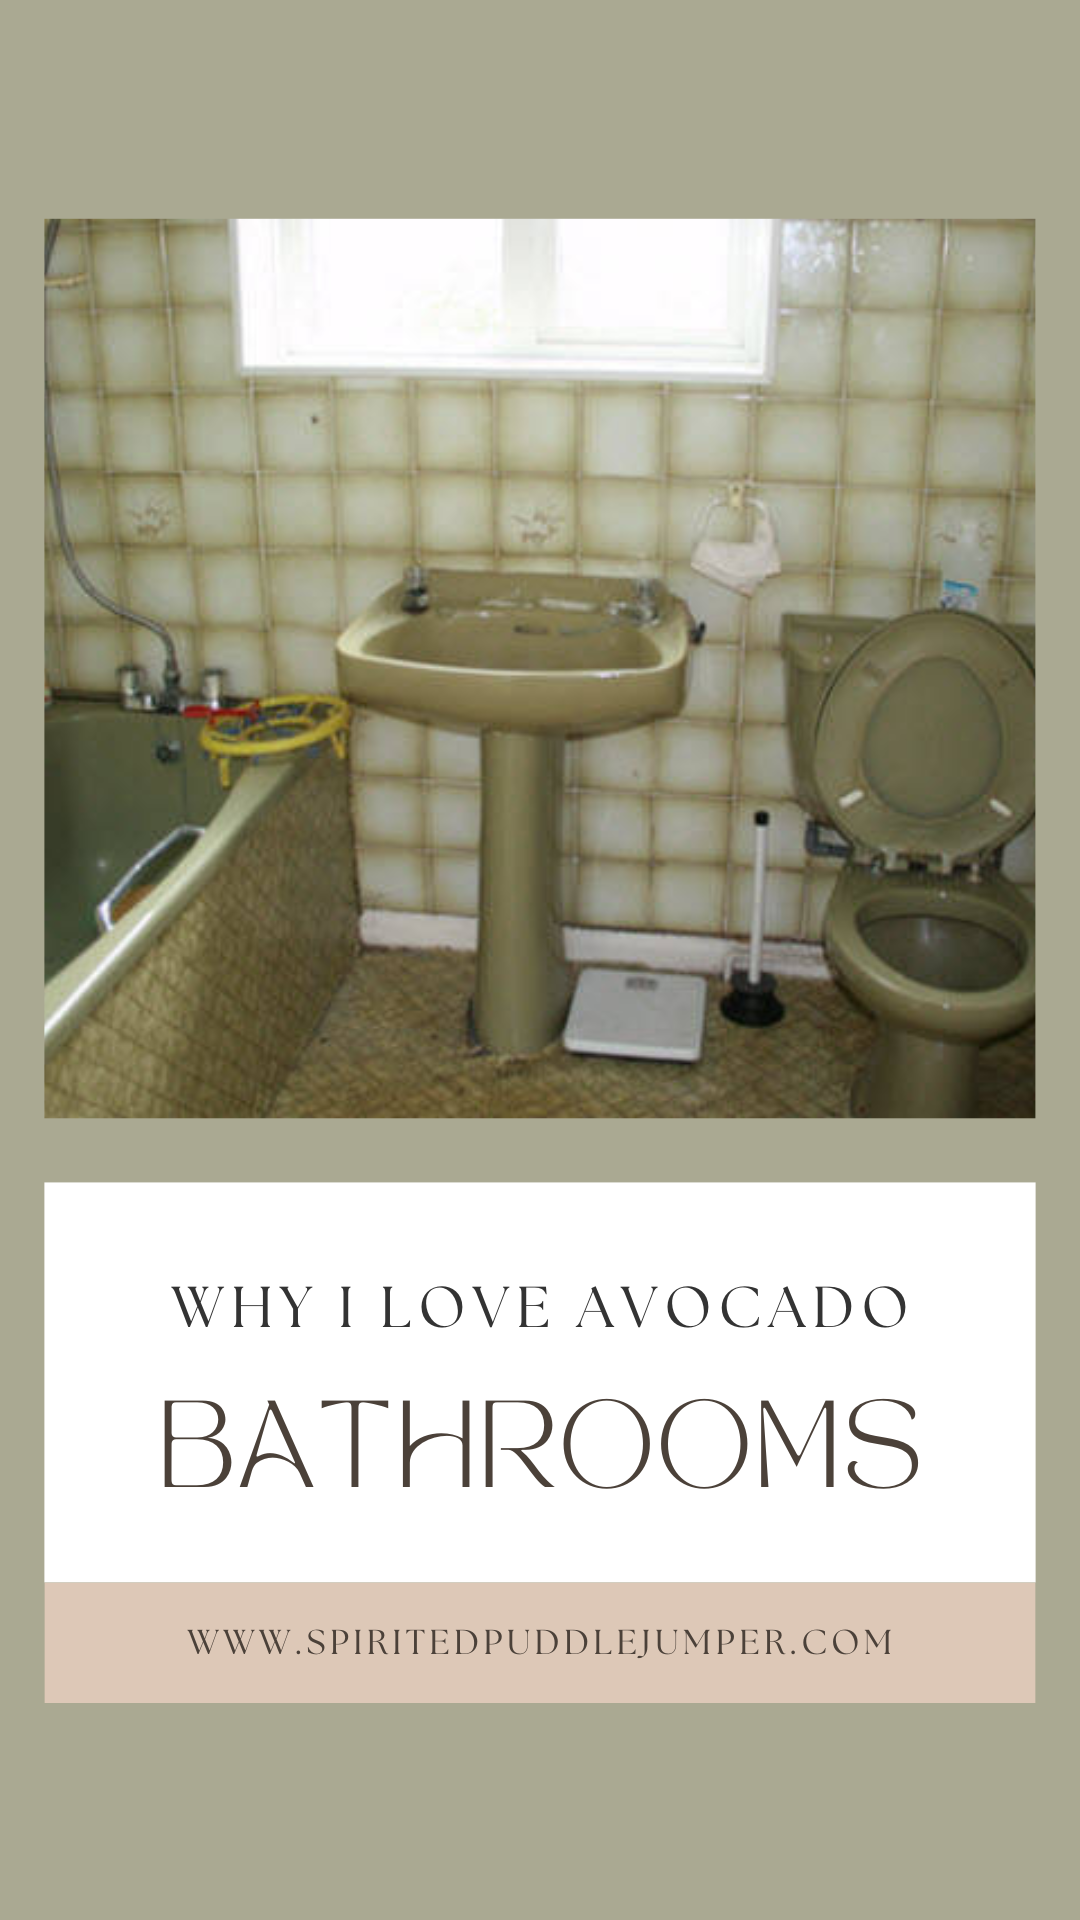 Avocado bathroom suite